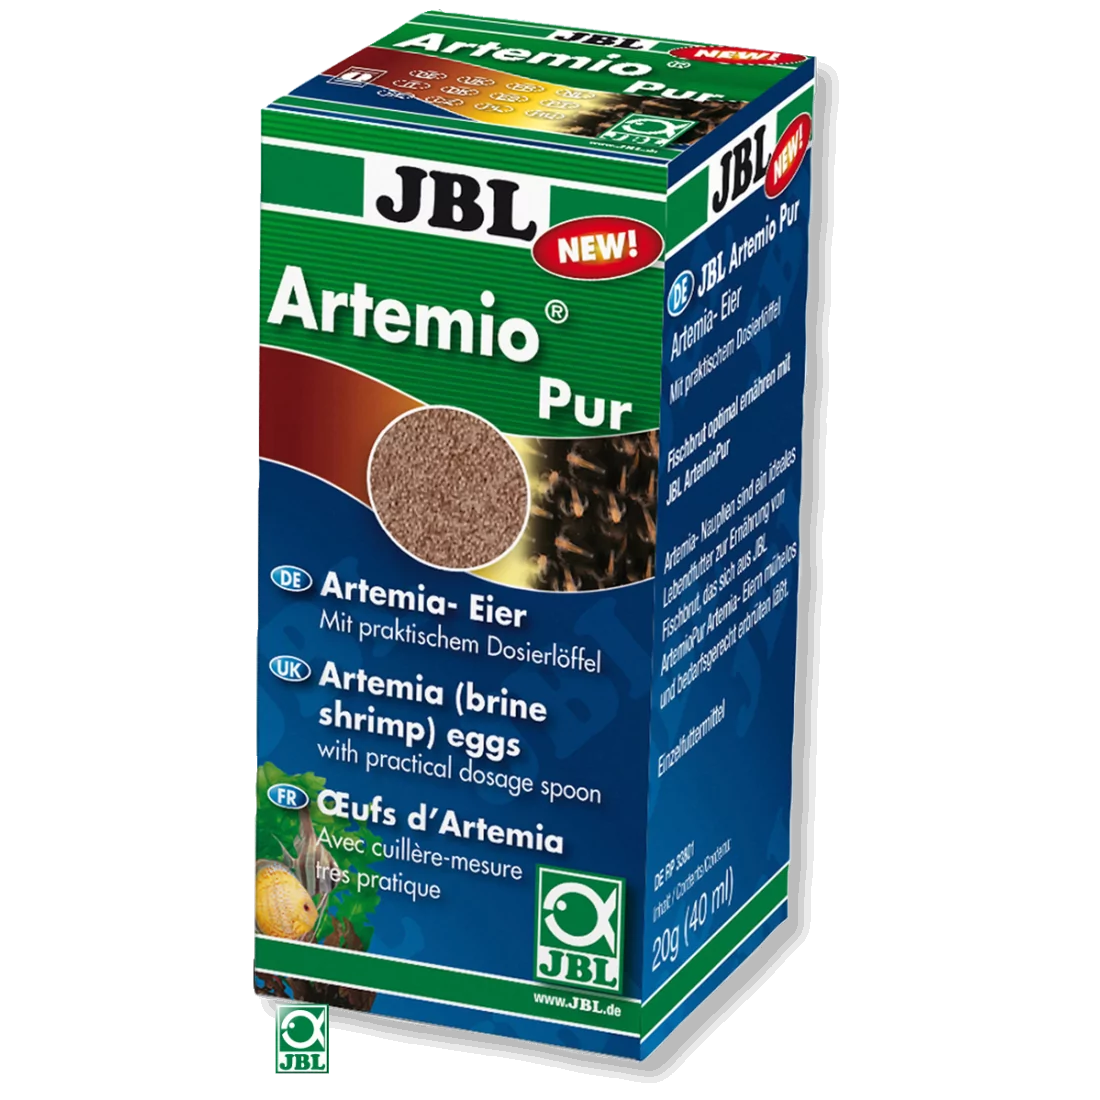 JBL ArtemioPur